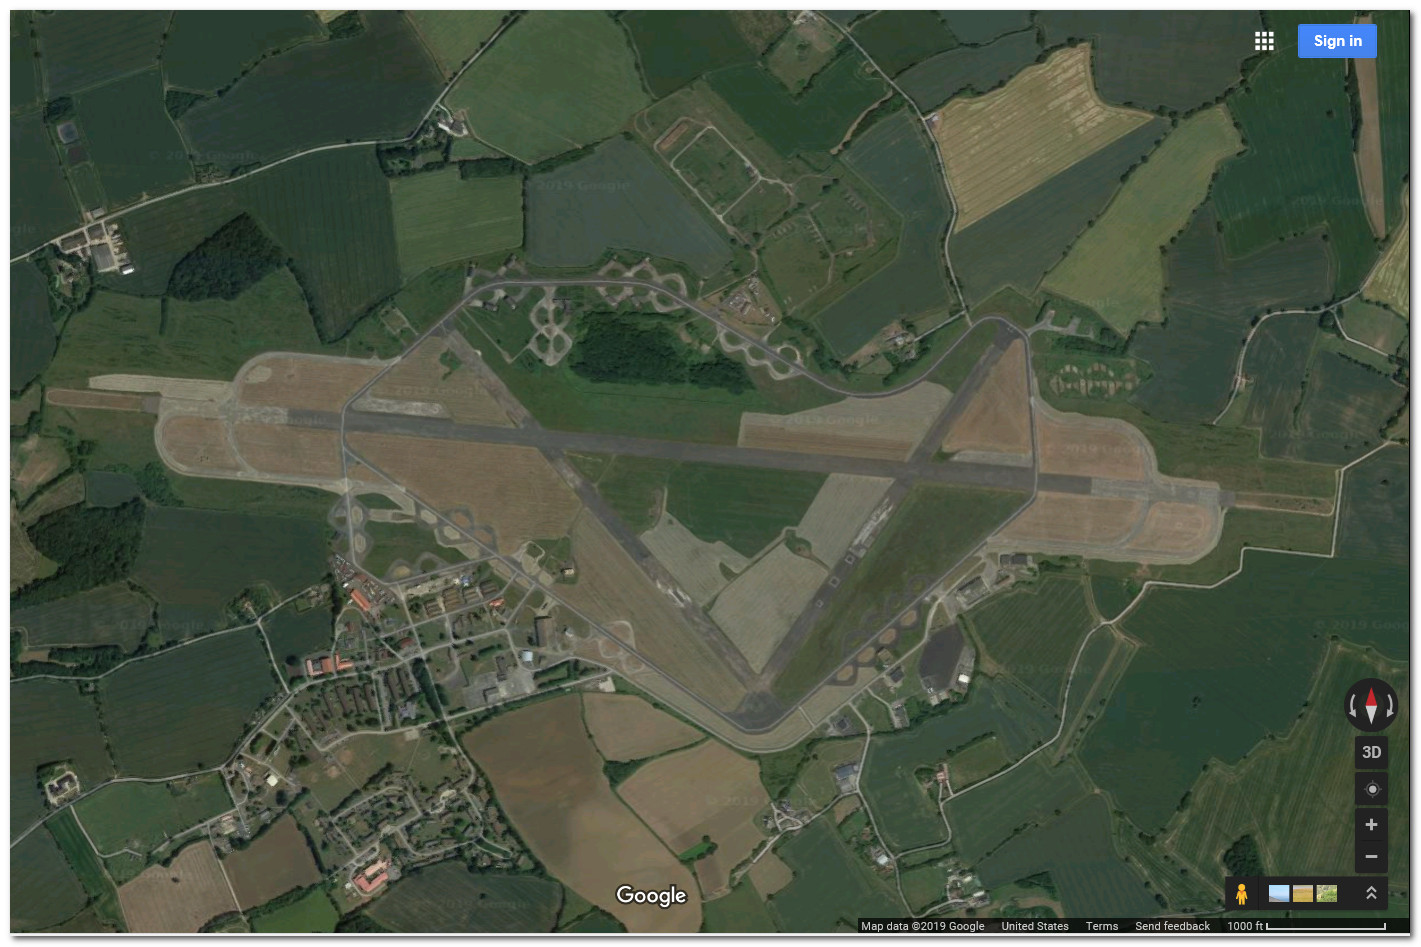 Wethersfield_England_GoogleMaps2019